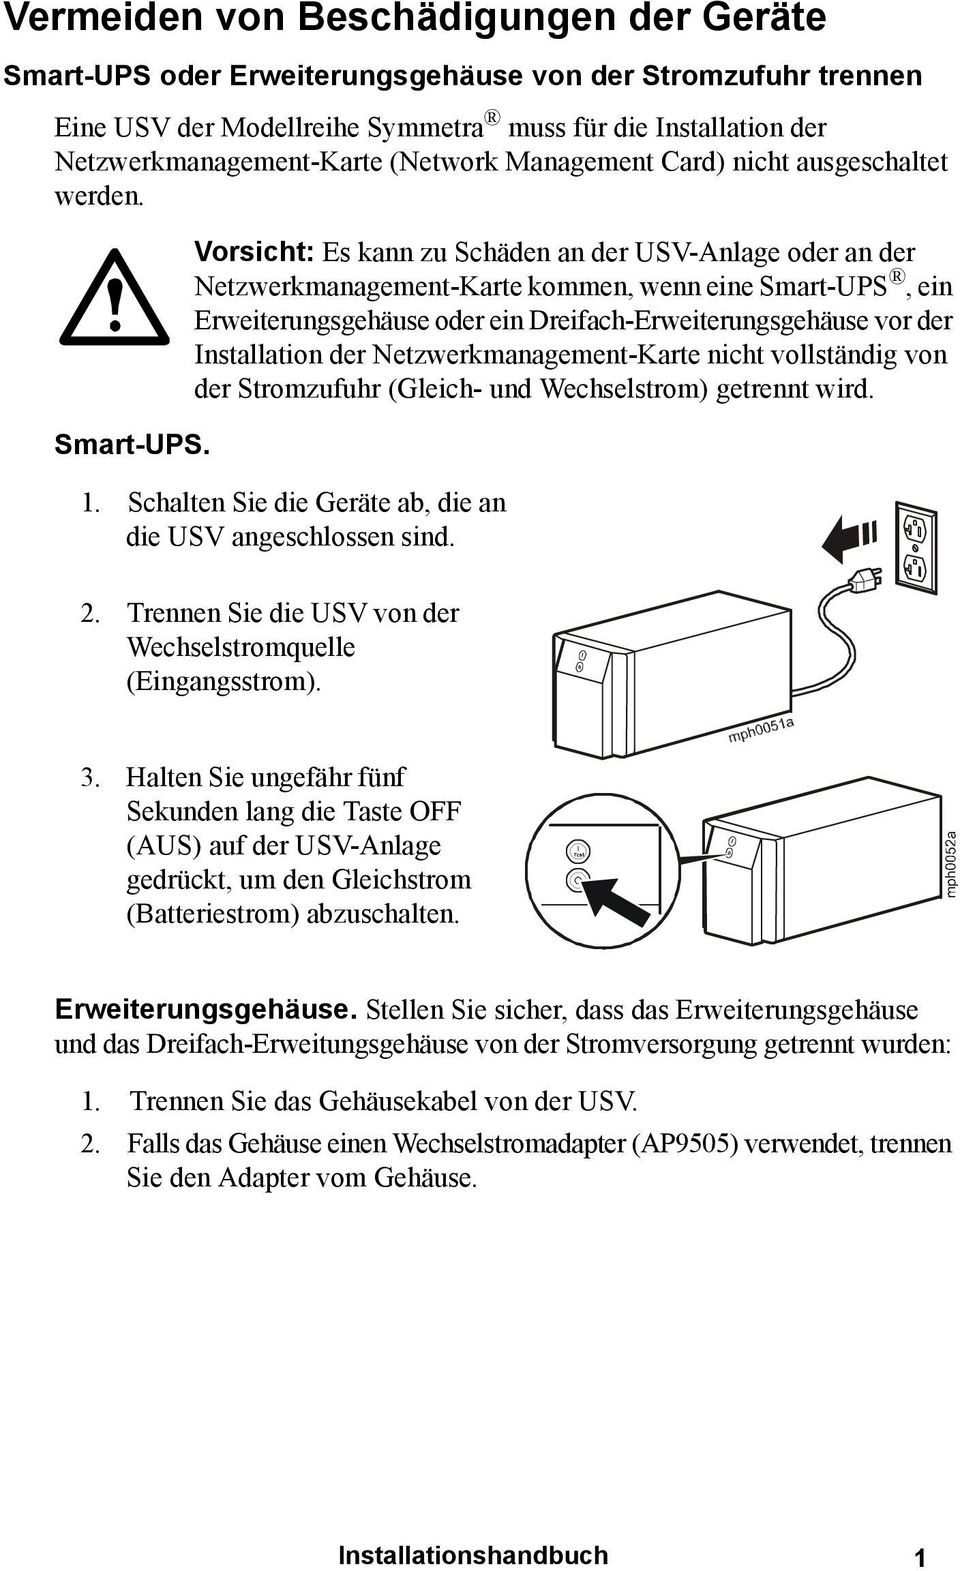 Vorsicht: Es kann zu Schäden an der USV-Anlage oder an der Netzwerkmanagement-Karte kommen, wenn eine Smart-UPS, ein Erweiterungsgehäuse oder ein Dreifach-Erweiterungsgehäuse vor der Installation der